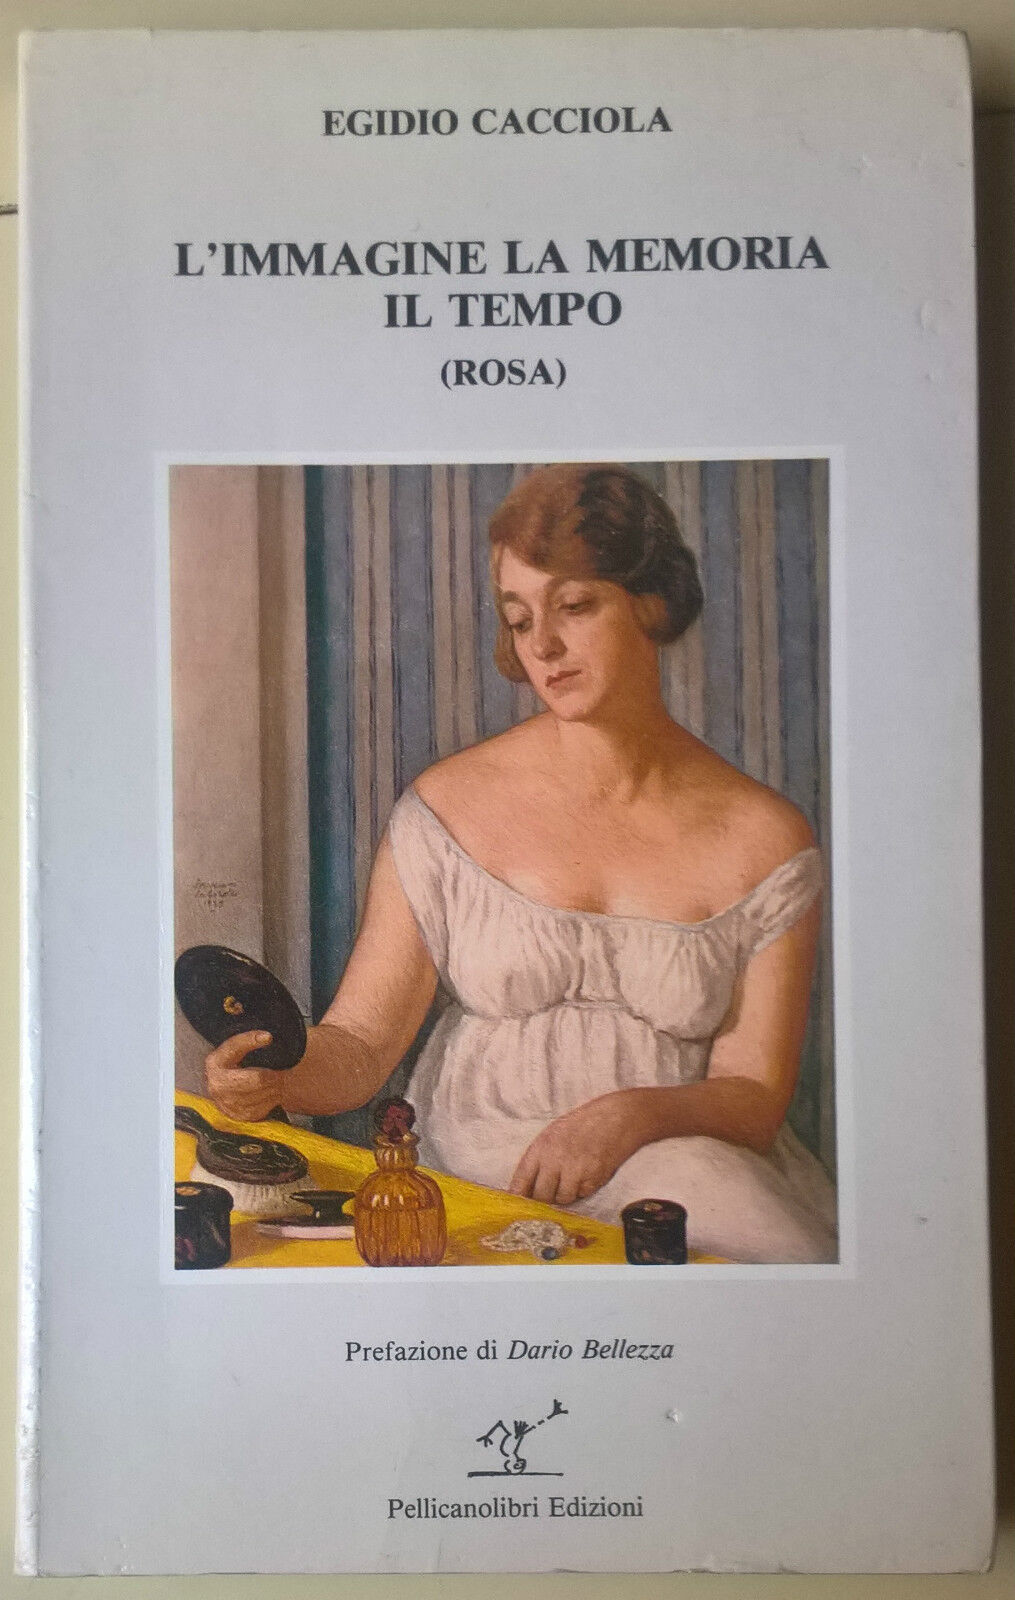 L'immagine la memoria il tempo (rosa) - Egidio Cacciola - 1985, Pellicanolibri L